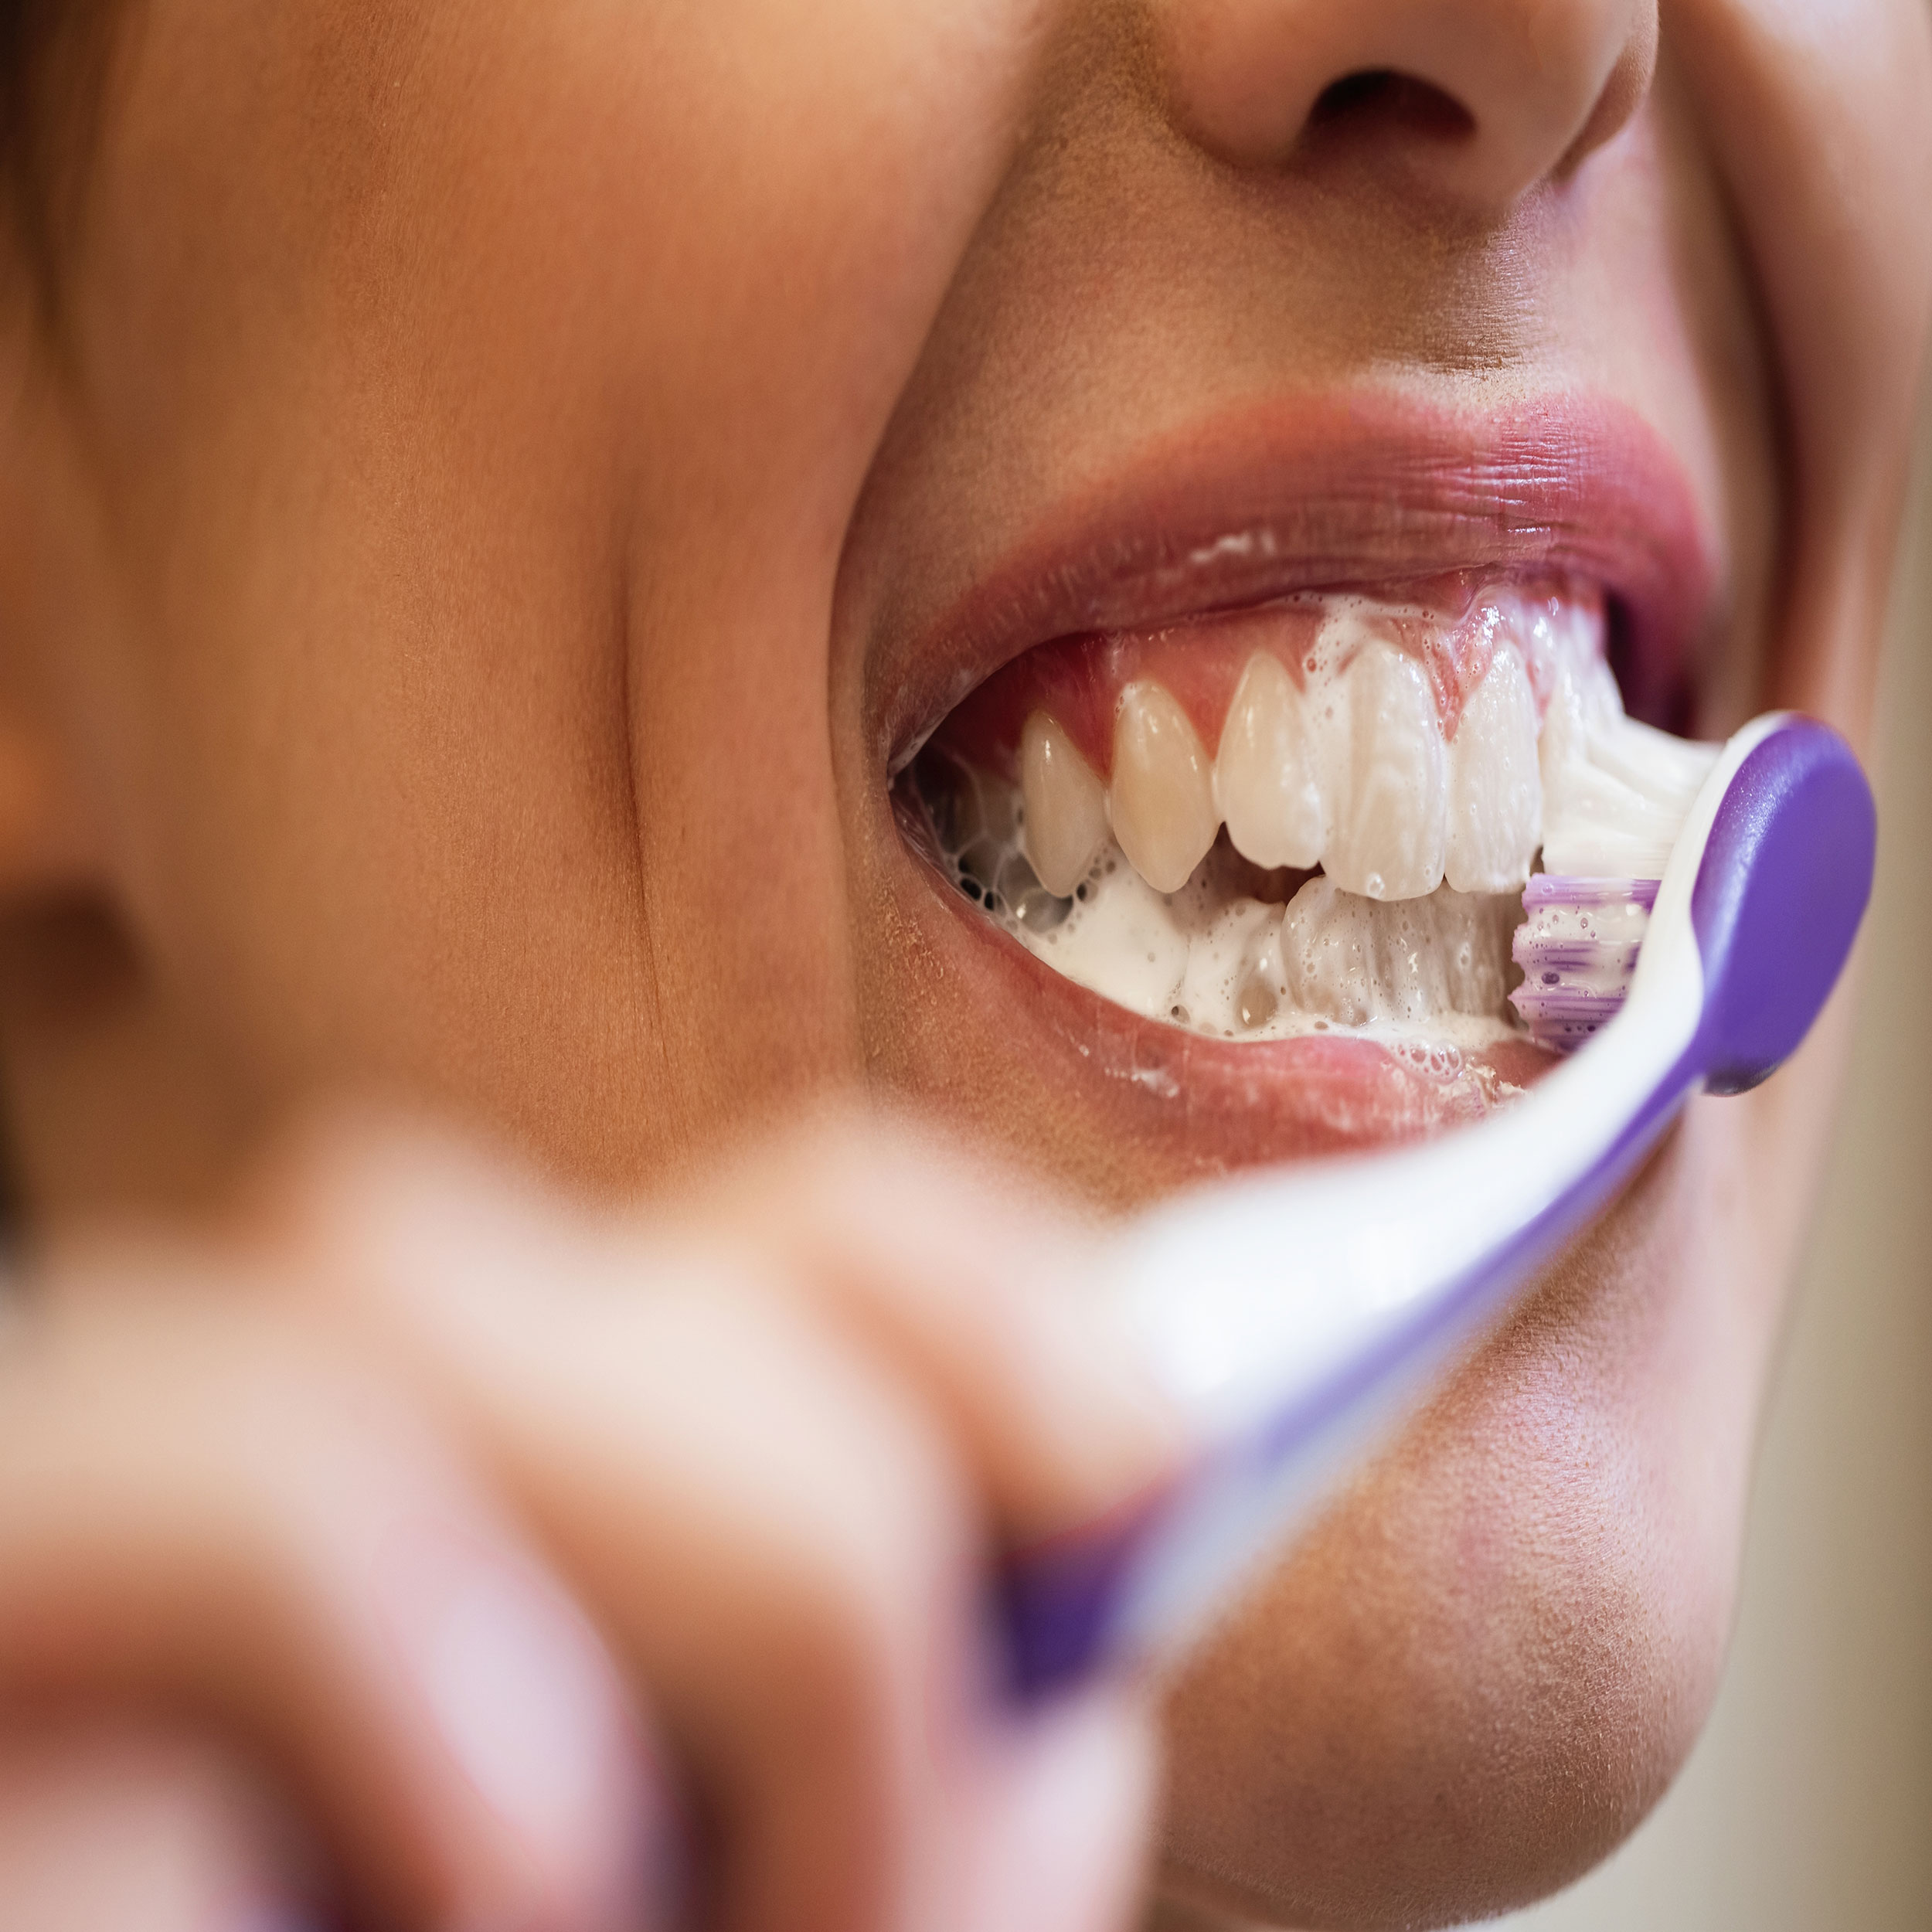 رعایت بهداشت دهان و دندان از موارد مهم جهت پیشگیری از پوسیدگی دندان است.